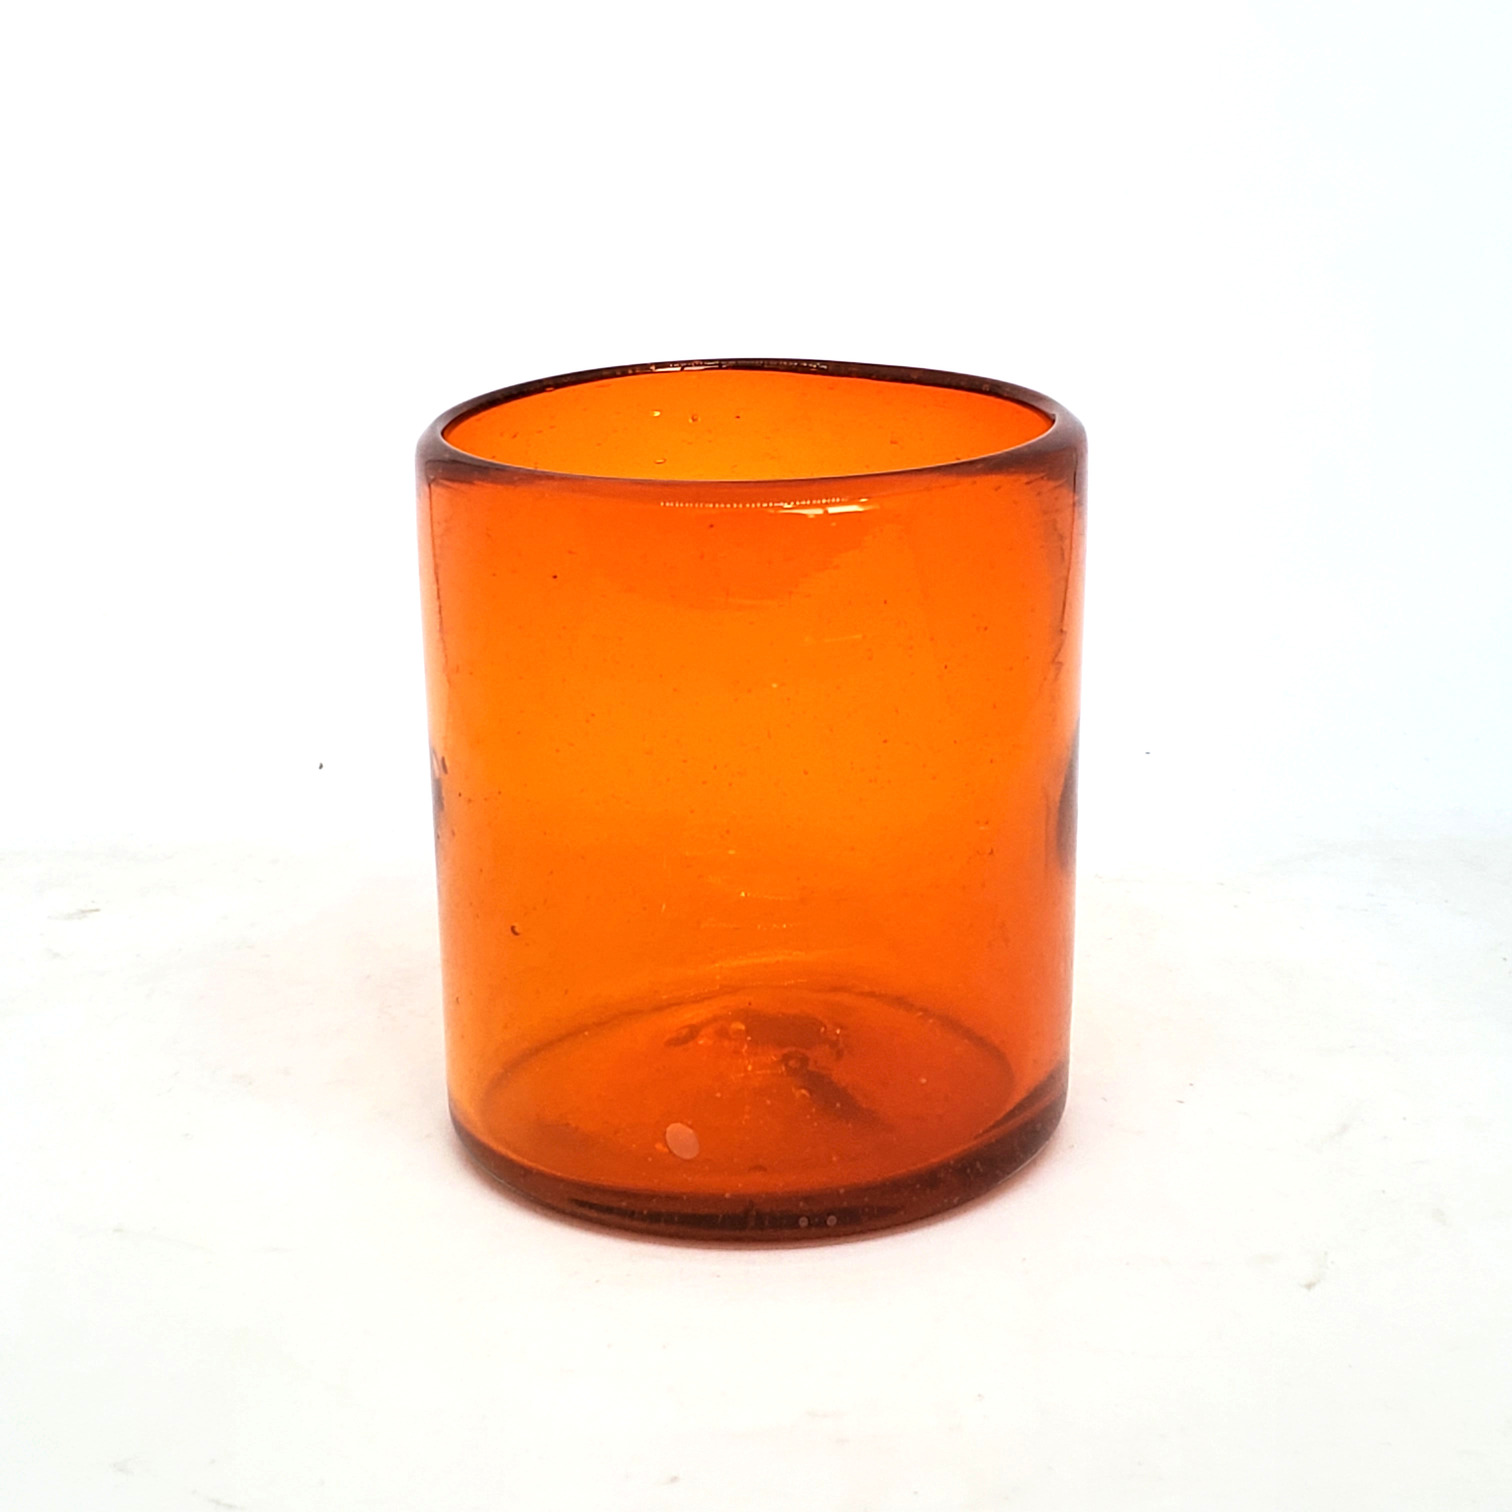 Colores Solidos / Vasos chicos 9 oz color Naranja Sólido (set de 6) / Éstos artesanales vasos le darán un toque colorido a su bebida favorita.